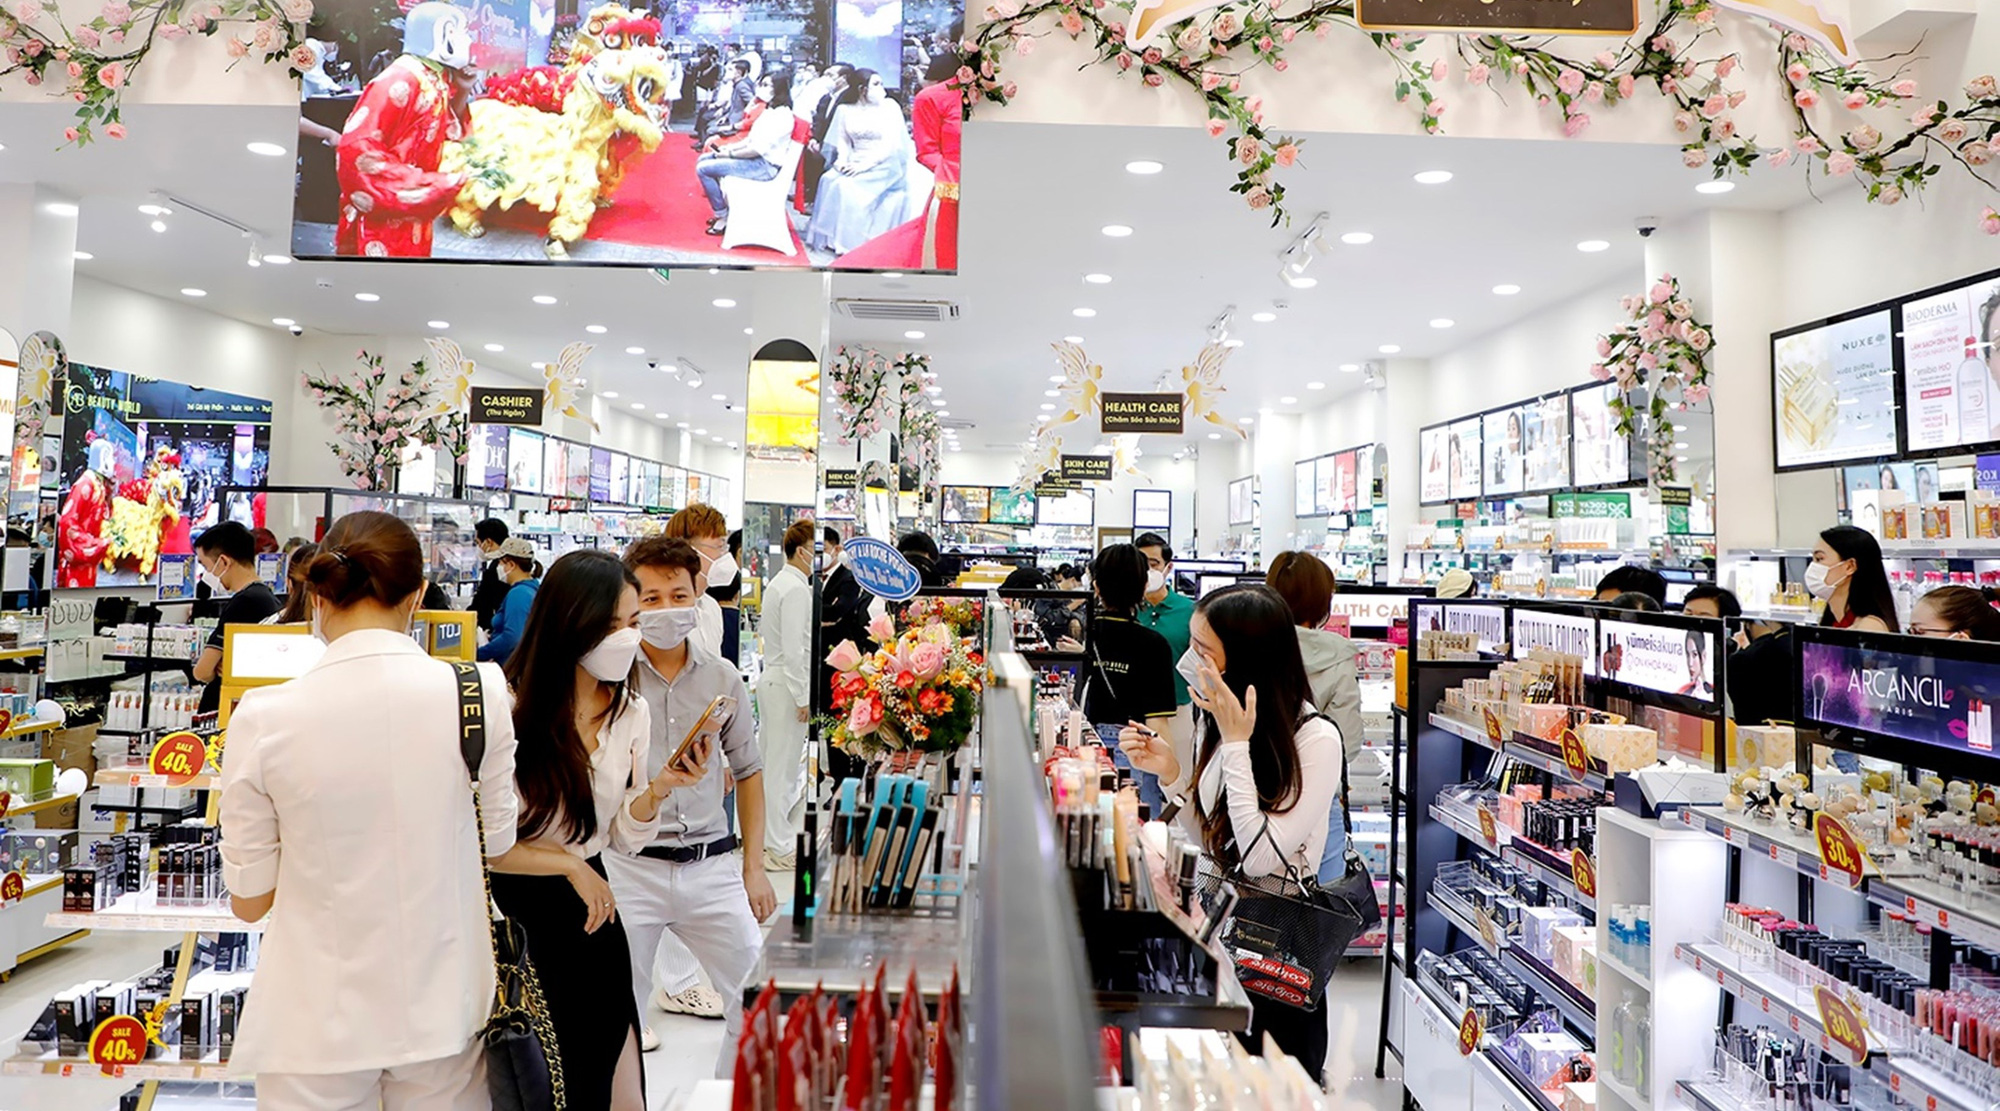 Chuỗi siêu thị mở rộng quy mô bất chấp dịch Covid-19 với chiến lược bán hàng không lợi nhuận - Ảnh 1.